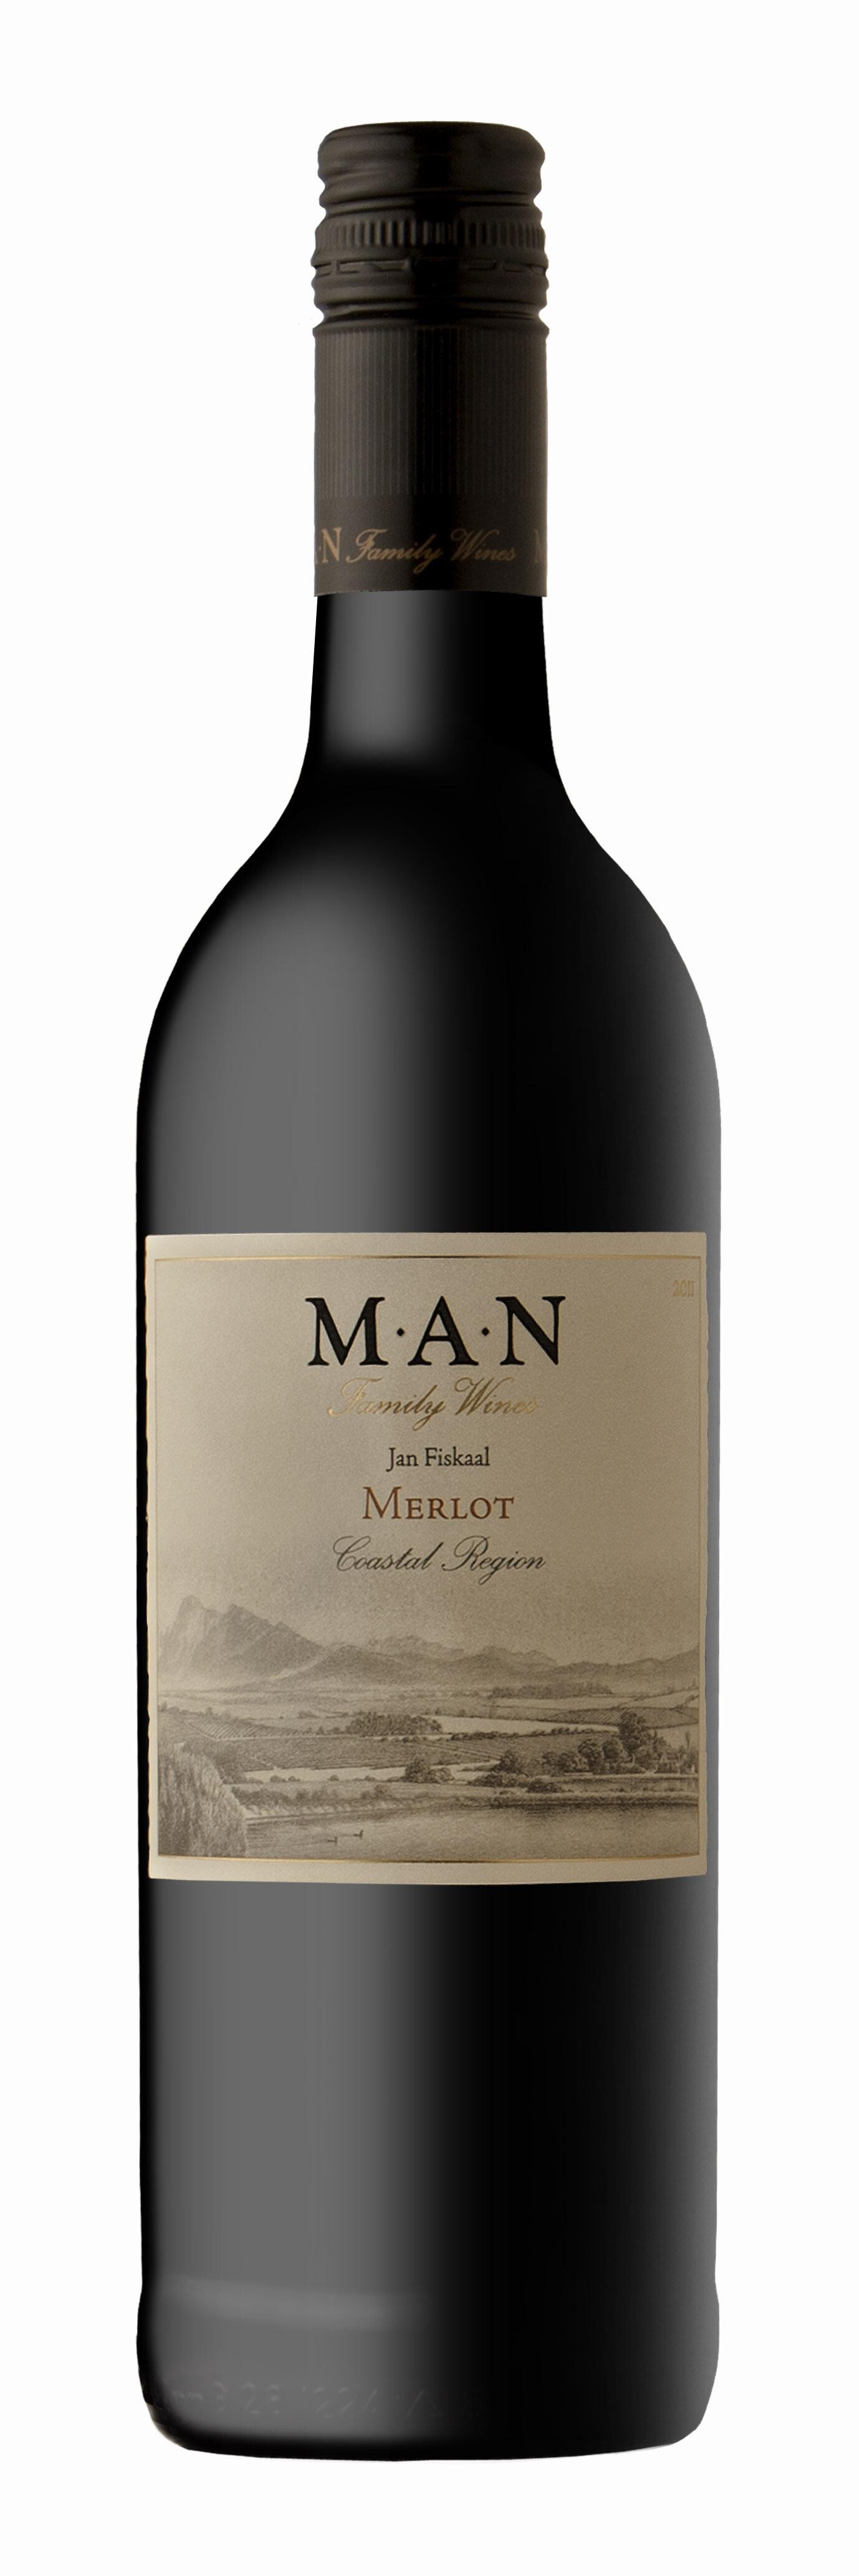 Merlot Jan Fiskaal 75cl 2014 MAN Family Wines - Coastal Region South Africa